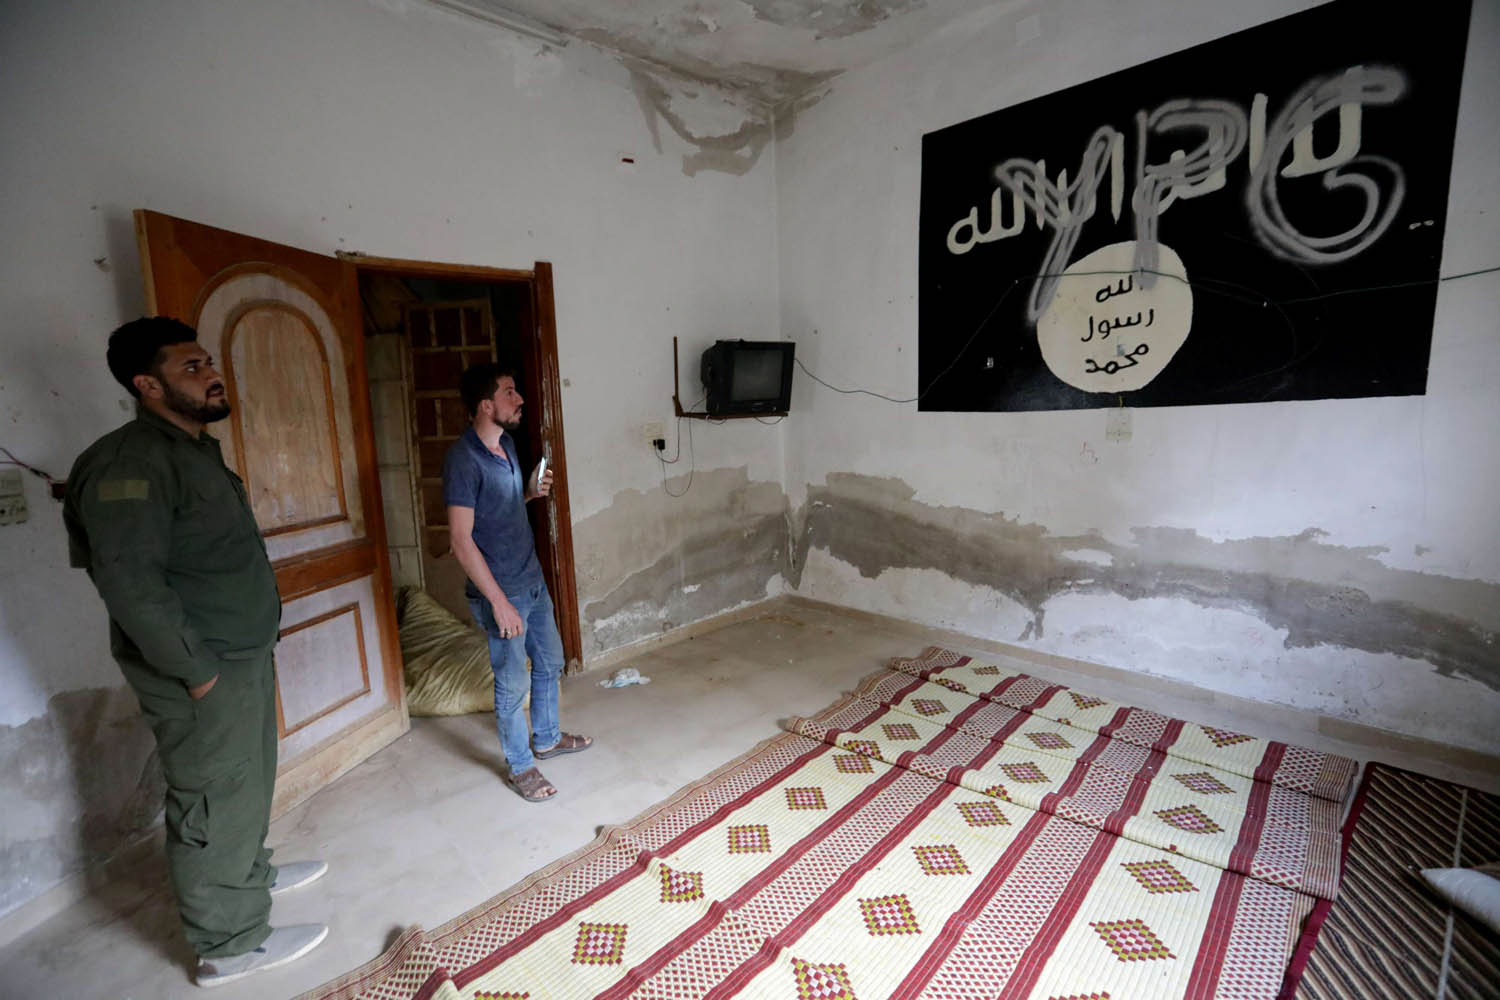 راية داعش في منزل في تل ابيض في سوريا